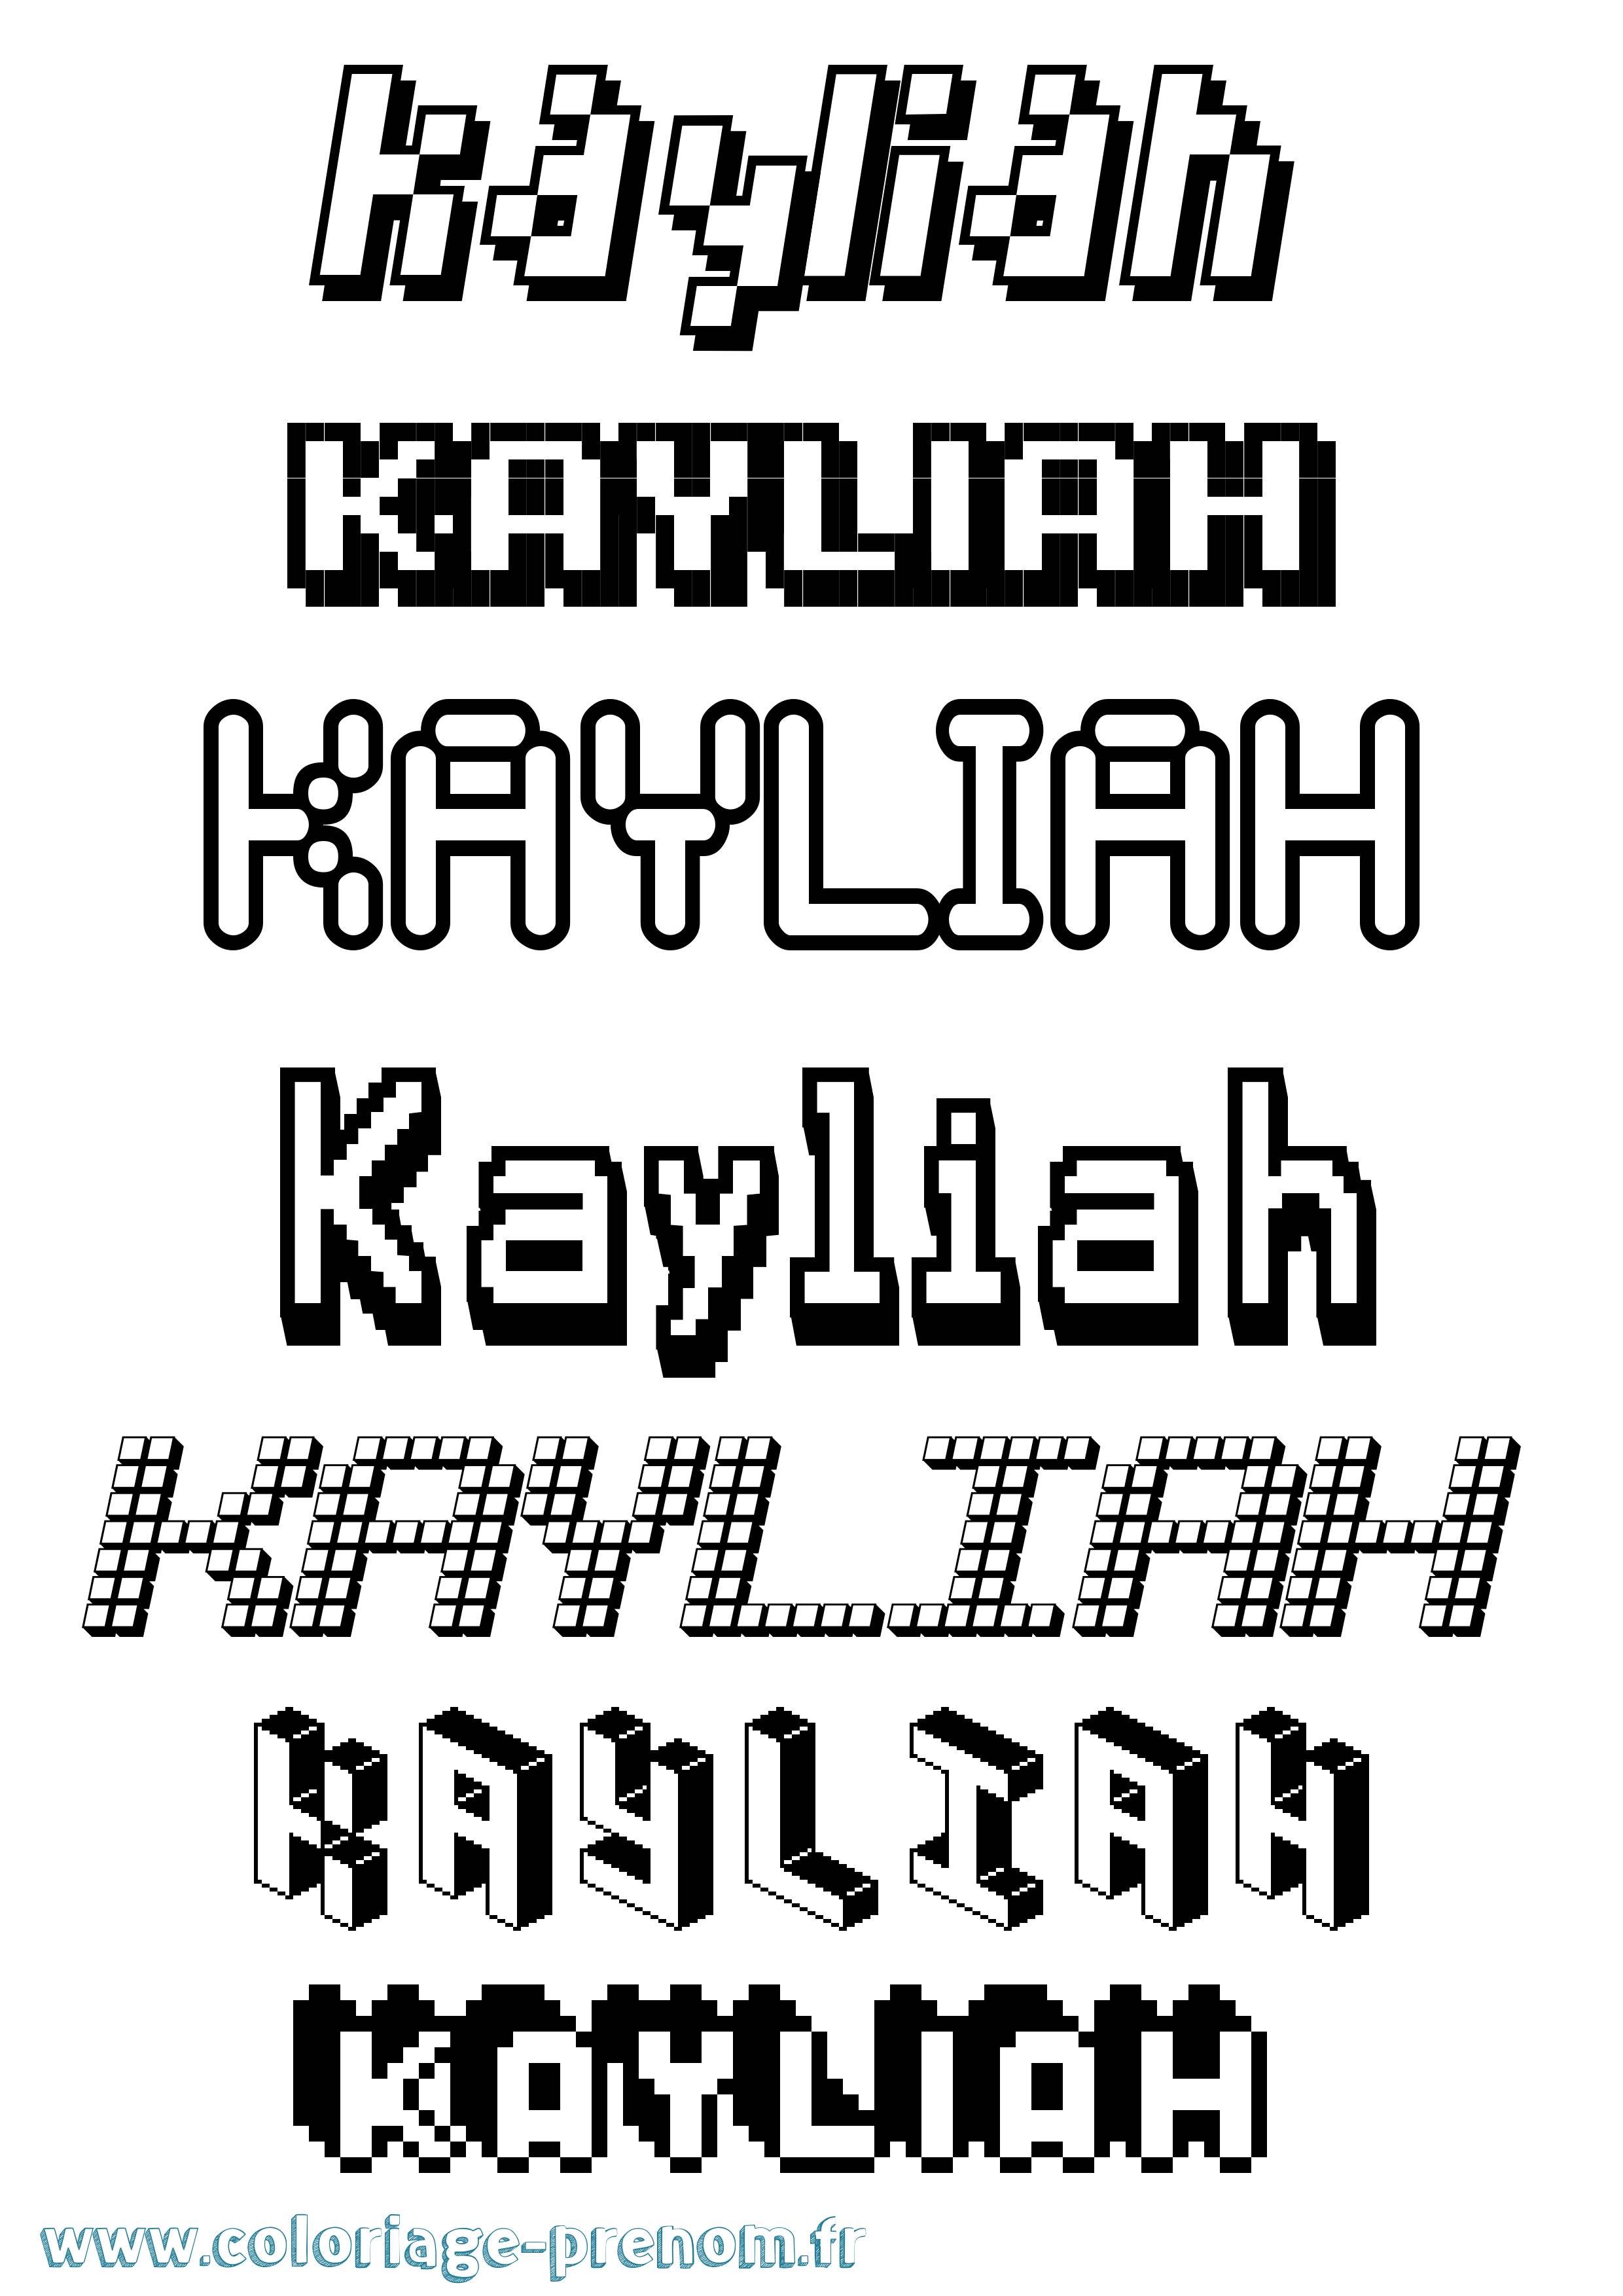 Coloriage prénom Kayliah